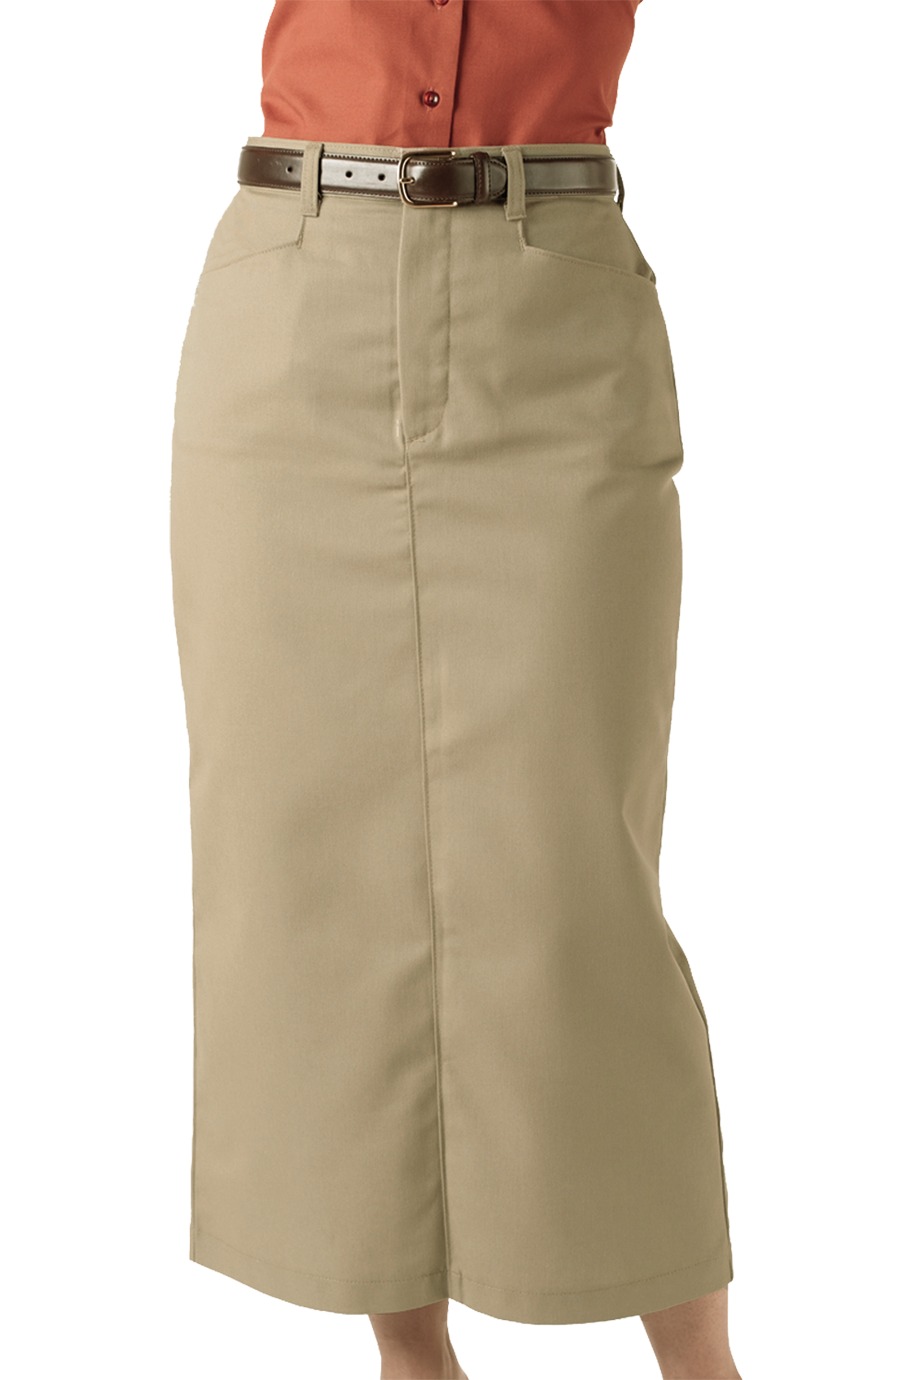 Edwards Garment 9779 - Women's Chino Skirt $36.00 - Skirts